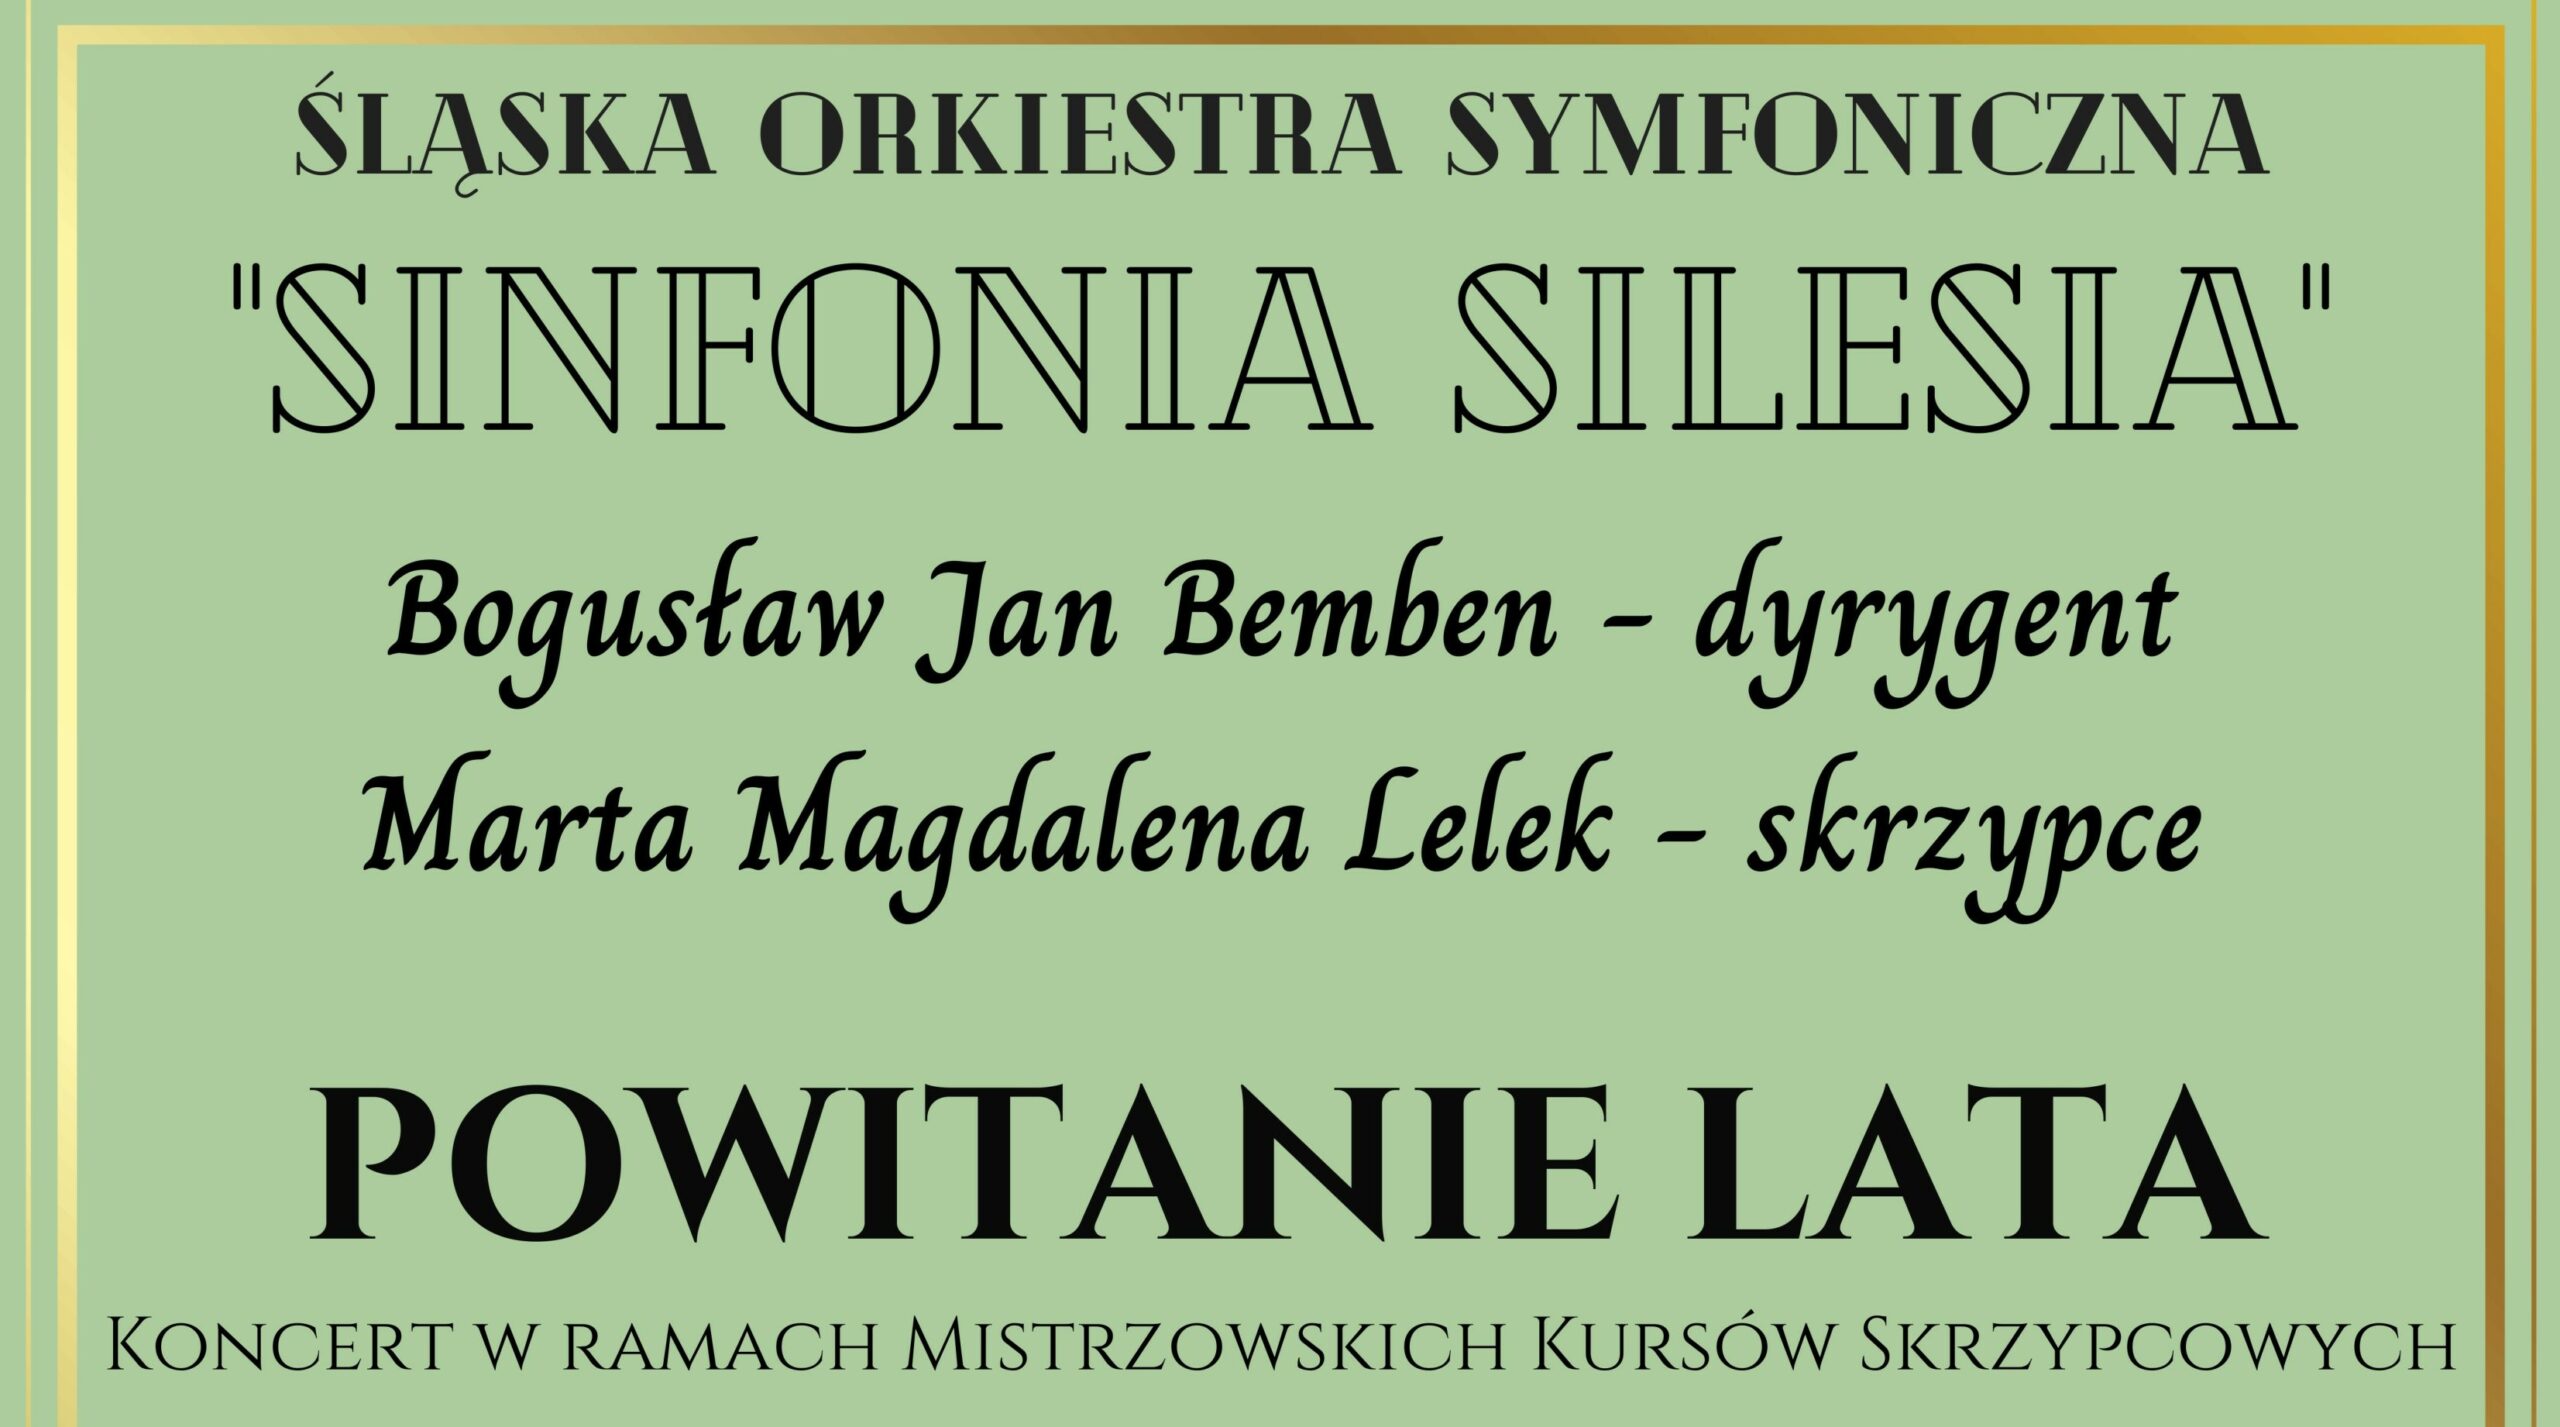 Koncert „Powitanie Lata” w wykonaniu Śląskiej Orkiestry Symfonicznej „SINFONIA SILESIA”